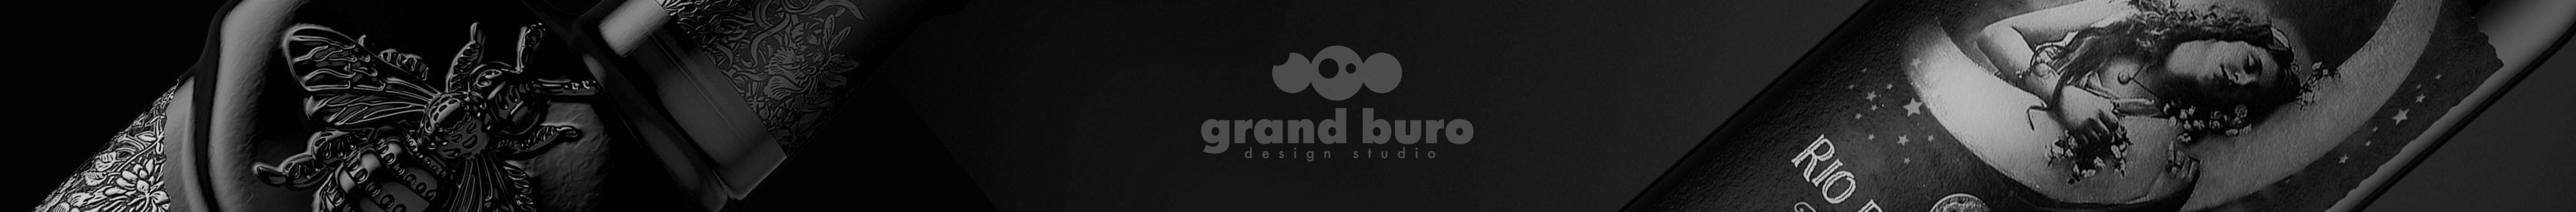 grand buro's profile banner